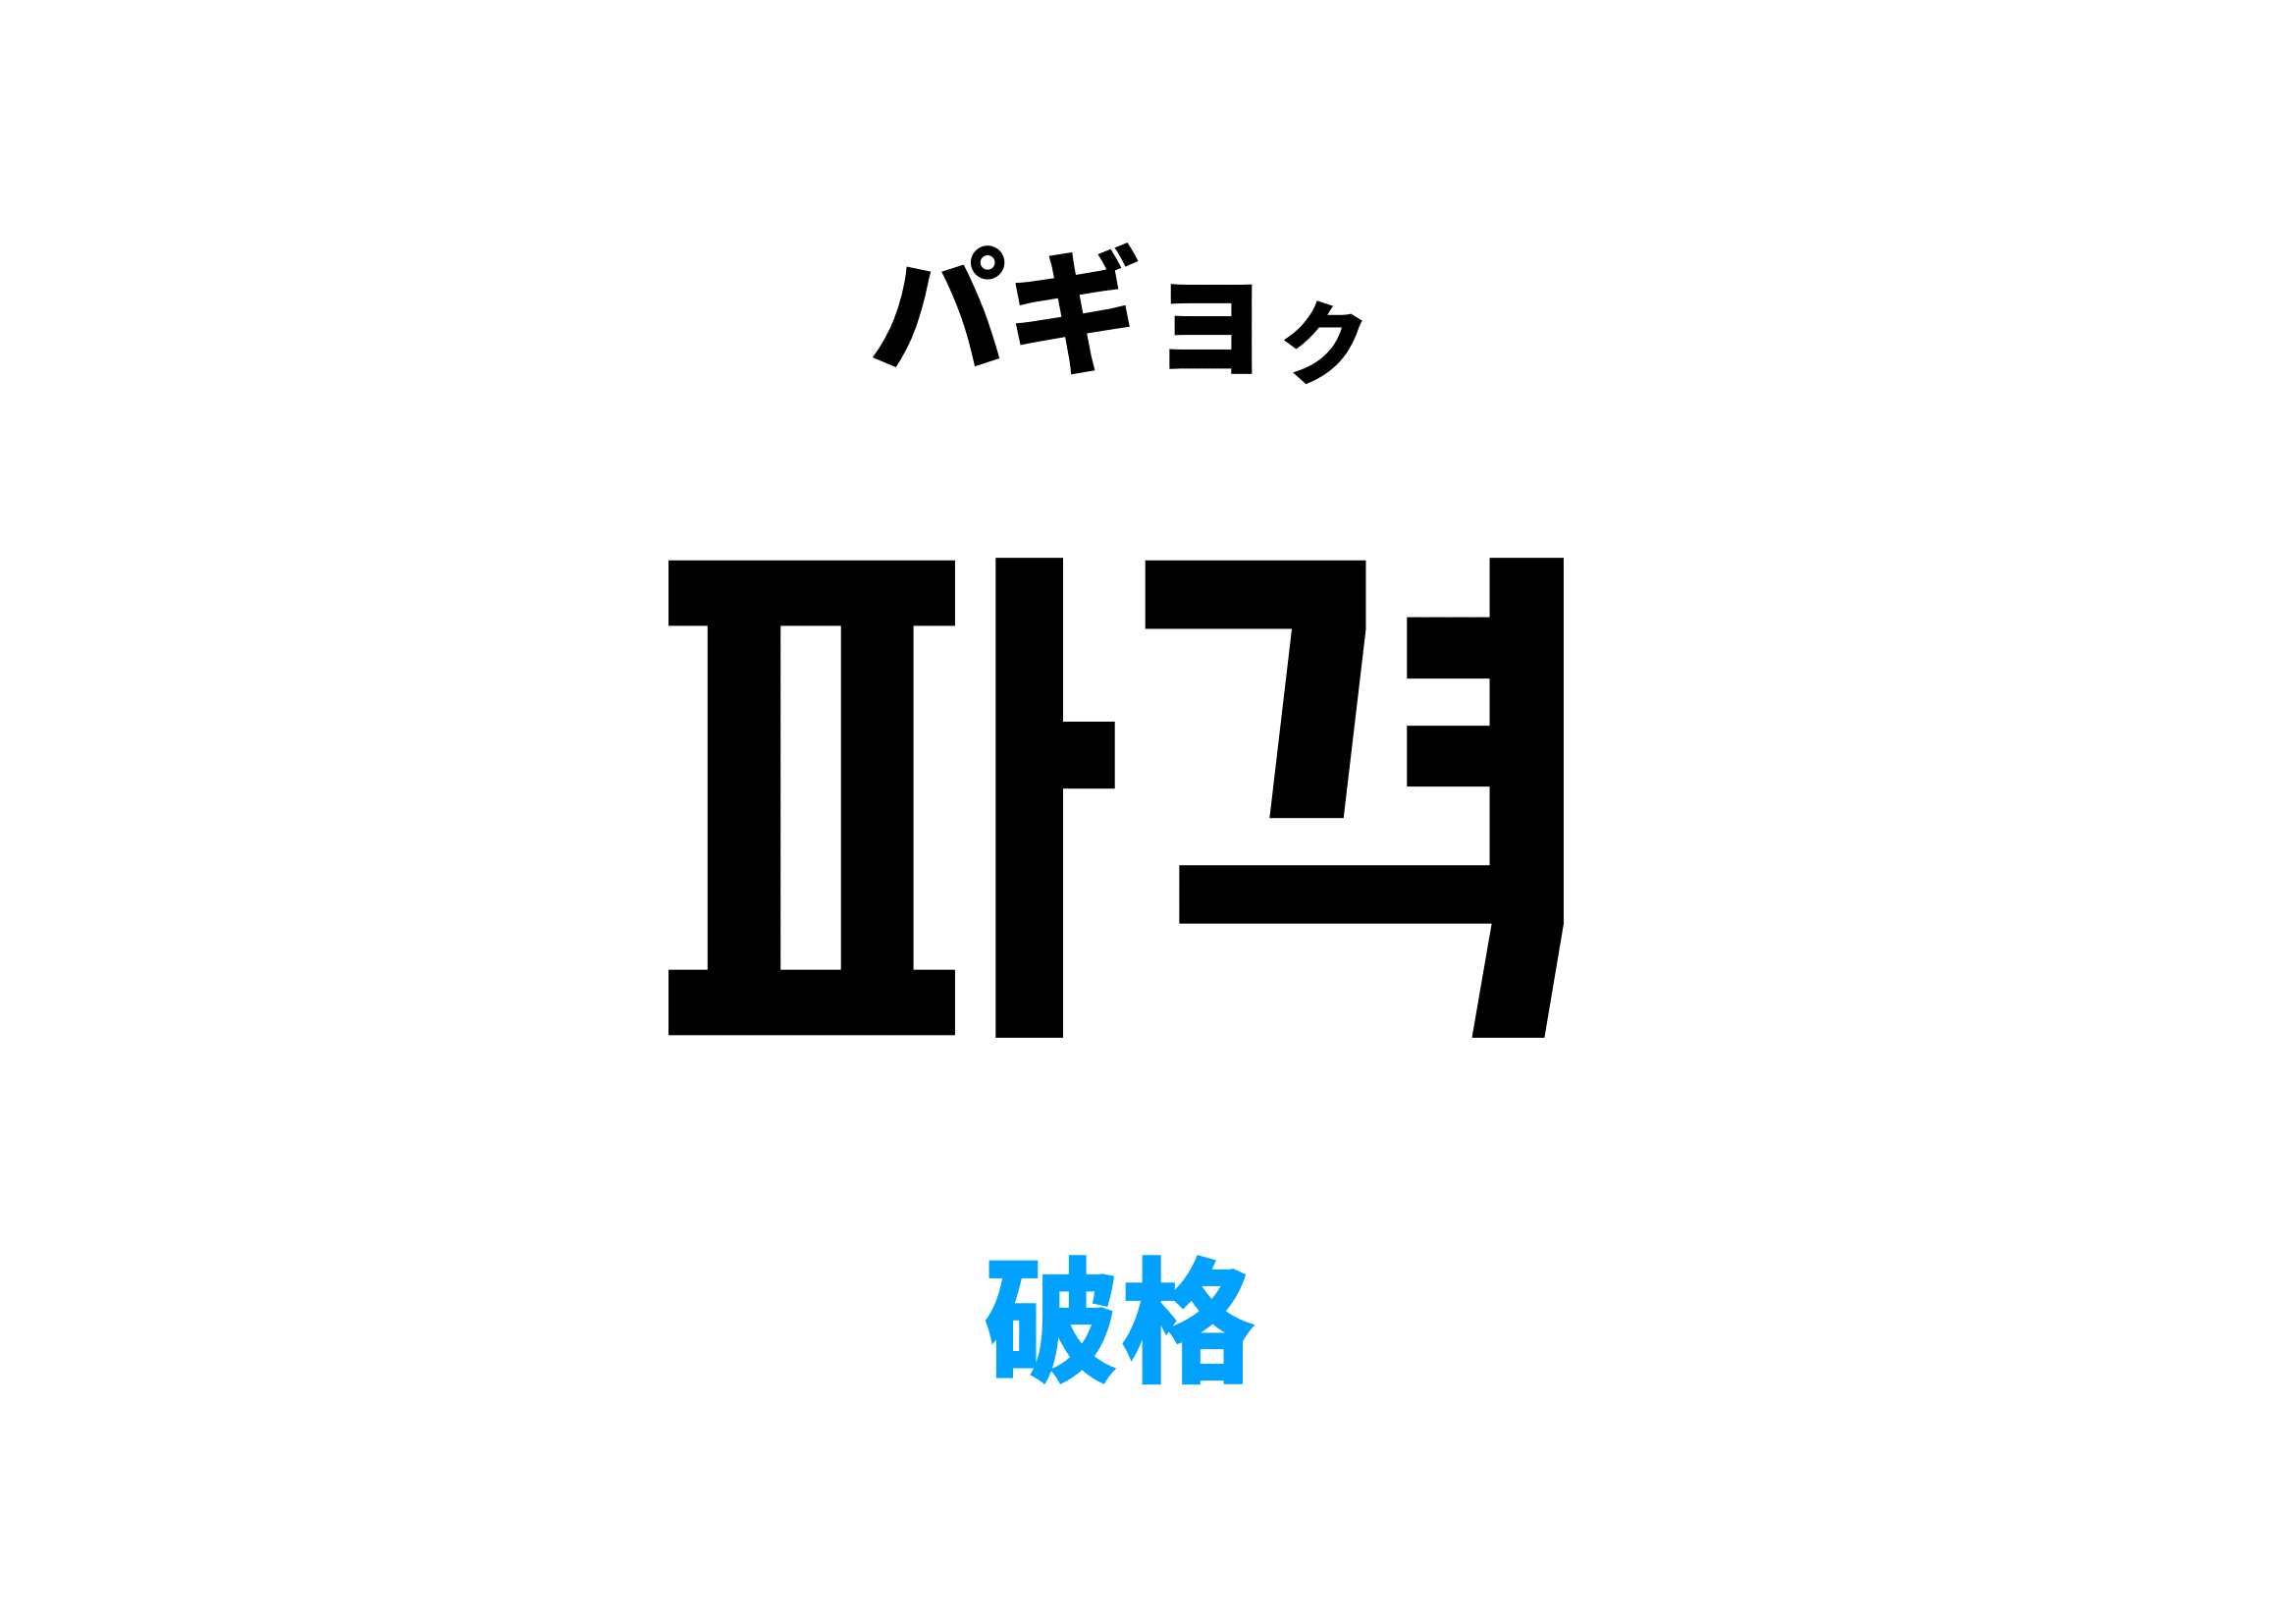 韓国語で破格 [파격]の意味と発音を学ぼう